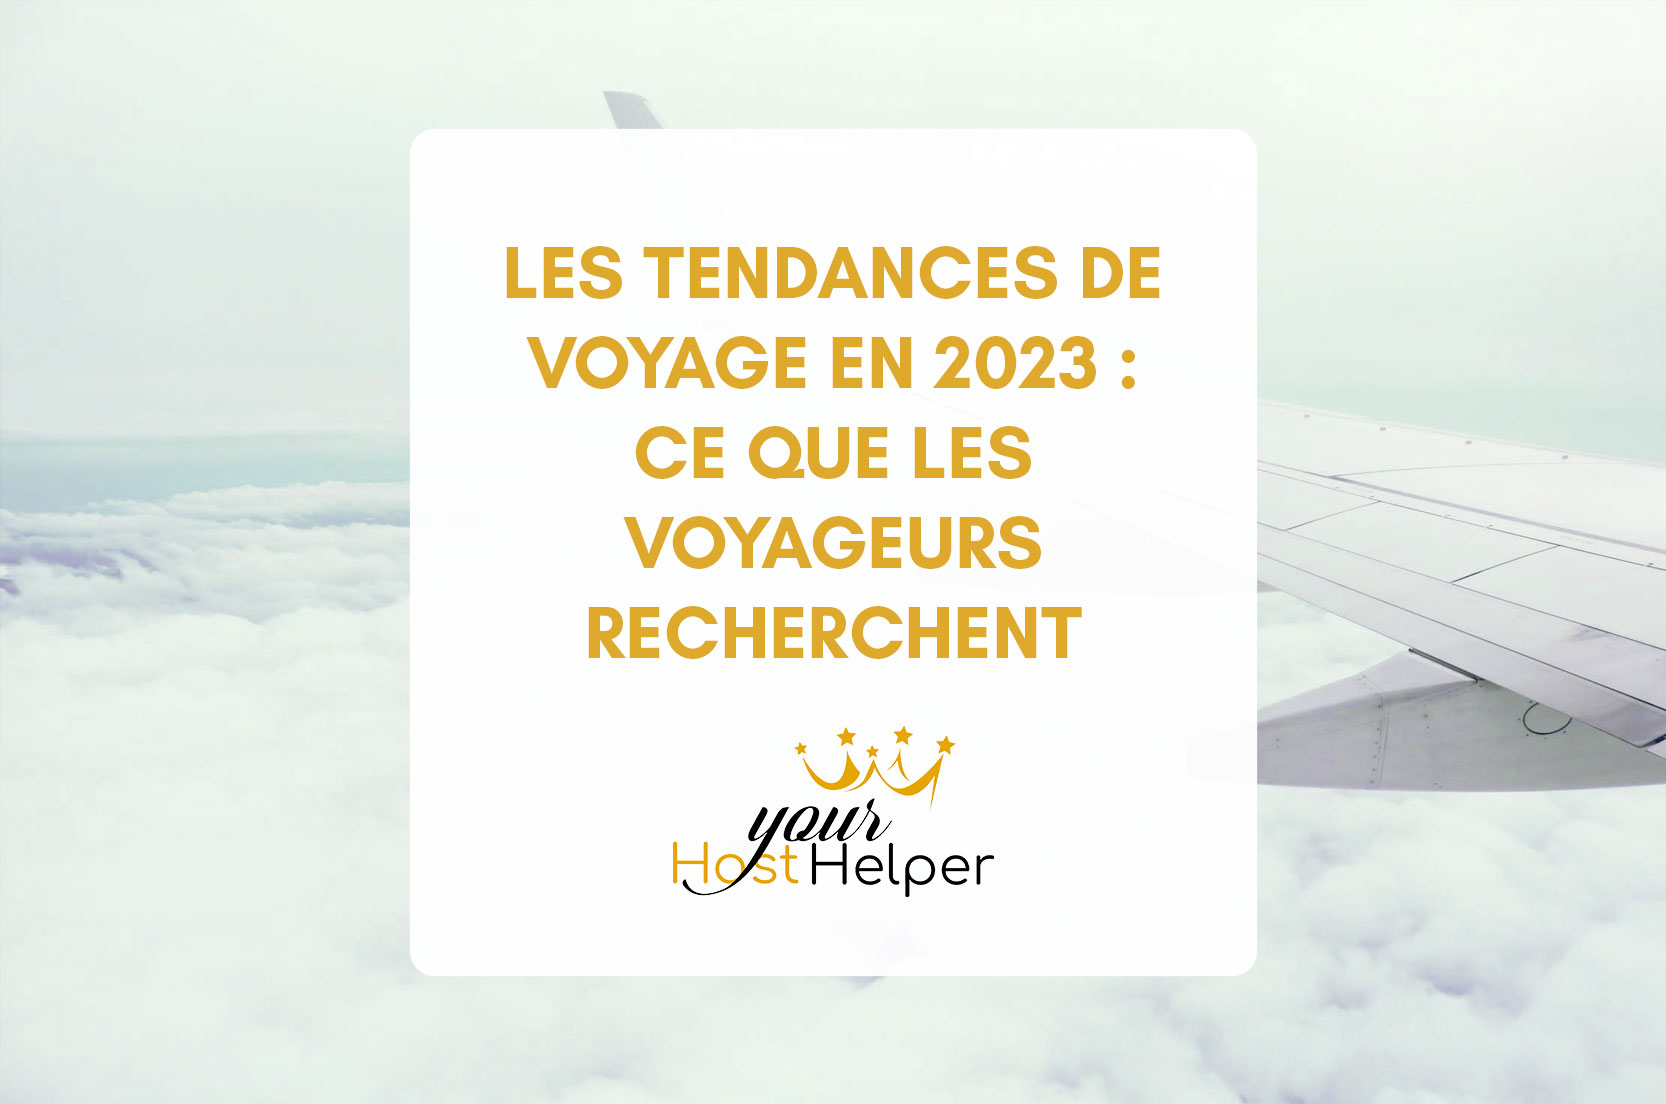 You are currently viewing Les tendances de voyage en 2023 : ce que les voyageurs recherchent